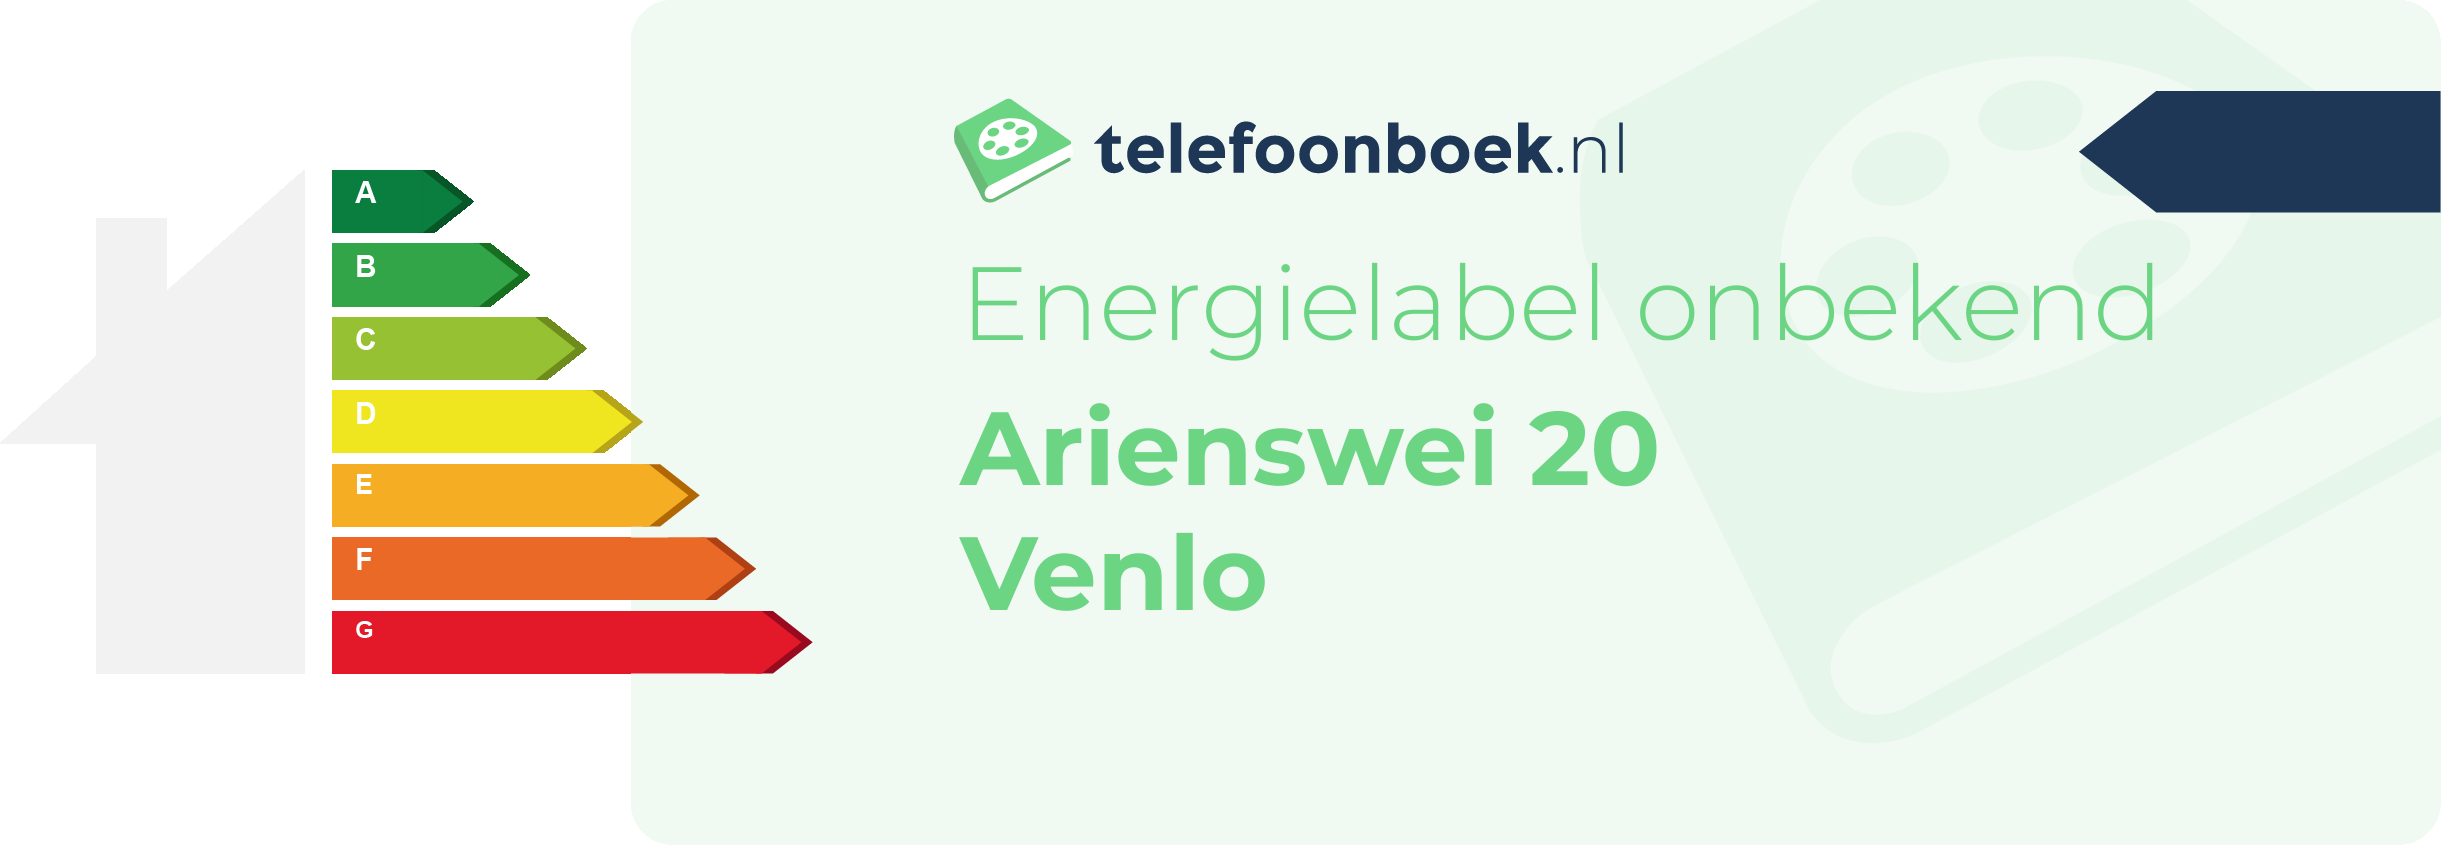 Energielabel Arienswei 20 Venlo